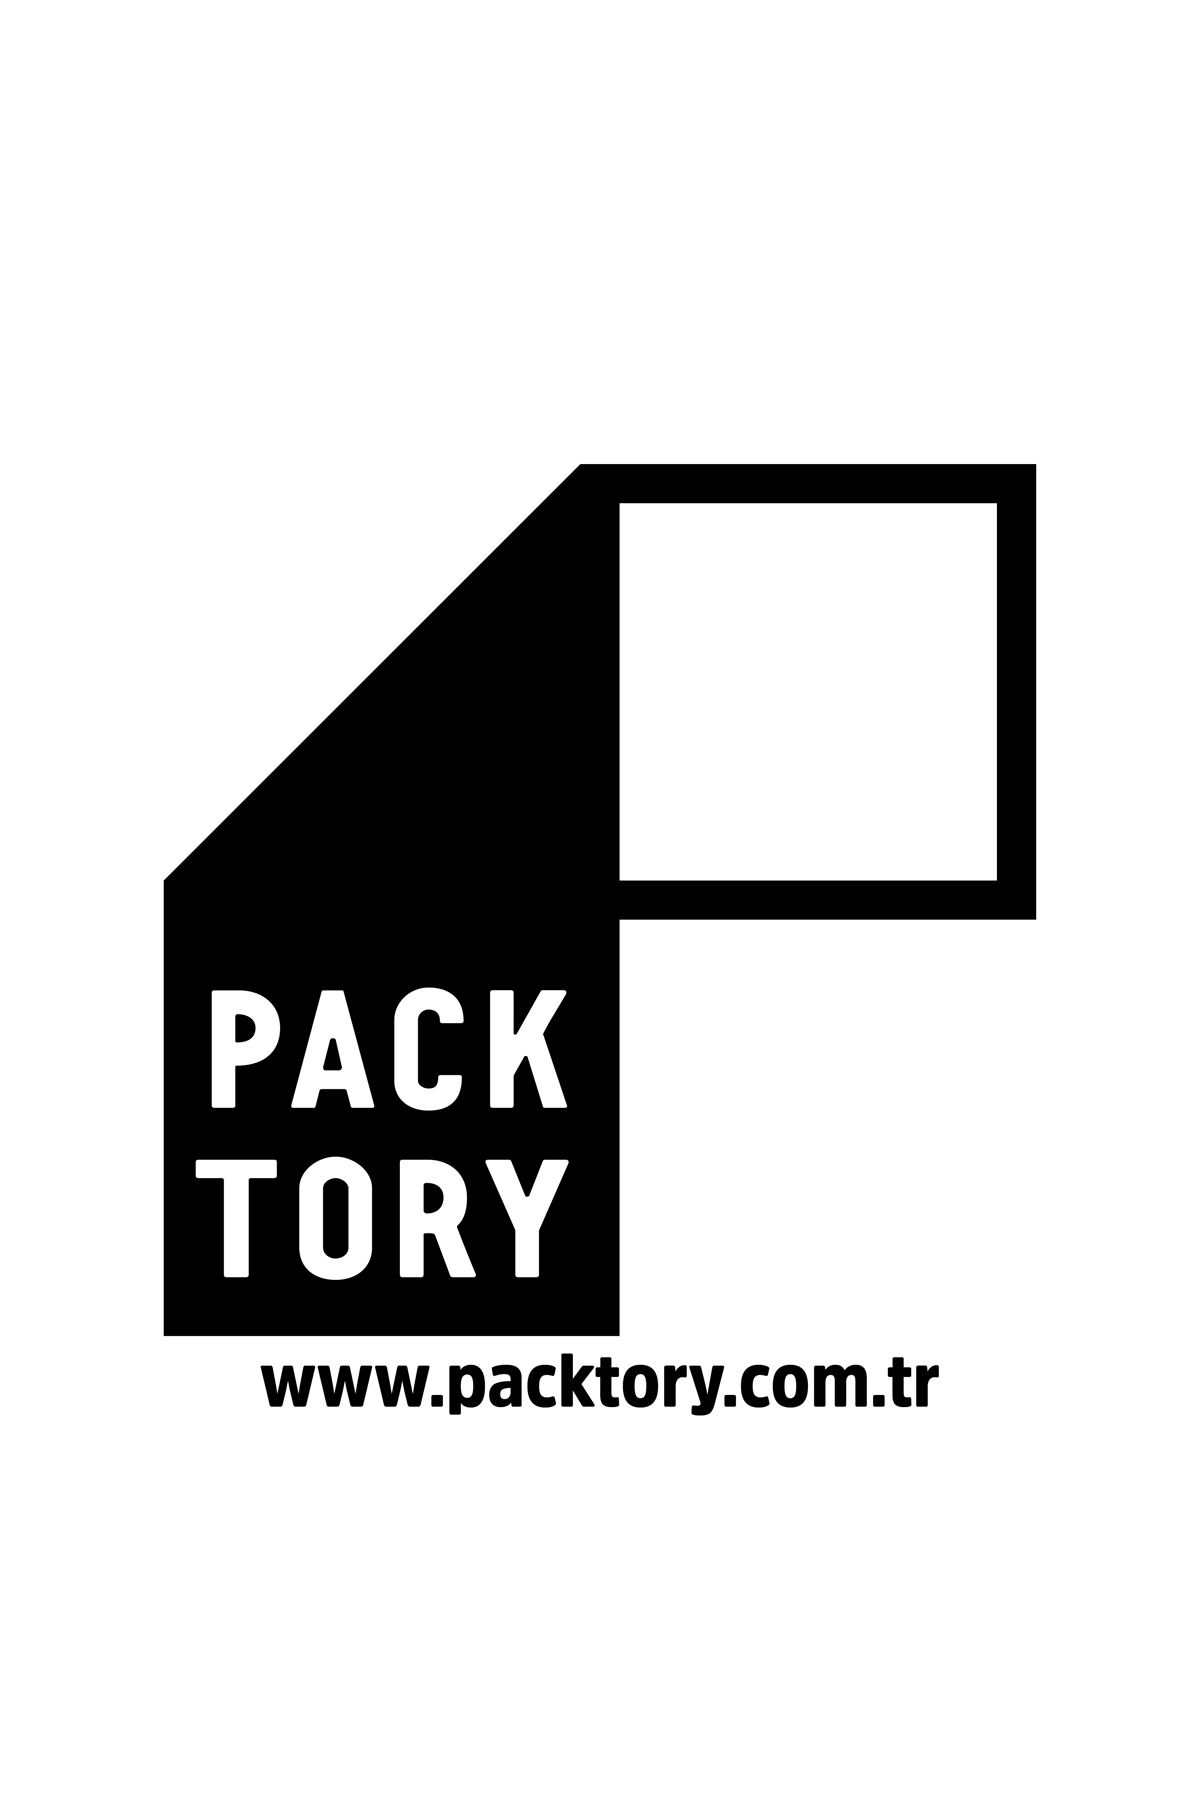 Packtory 11 x 18,5 + 3,5 Cm Şeffaf Kilitli Doypack Ambalaj 100 Gr. 50 Adet